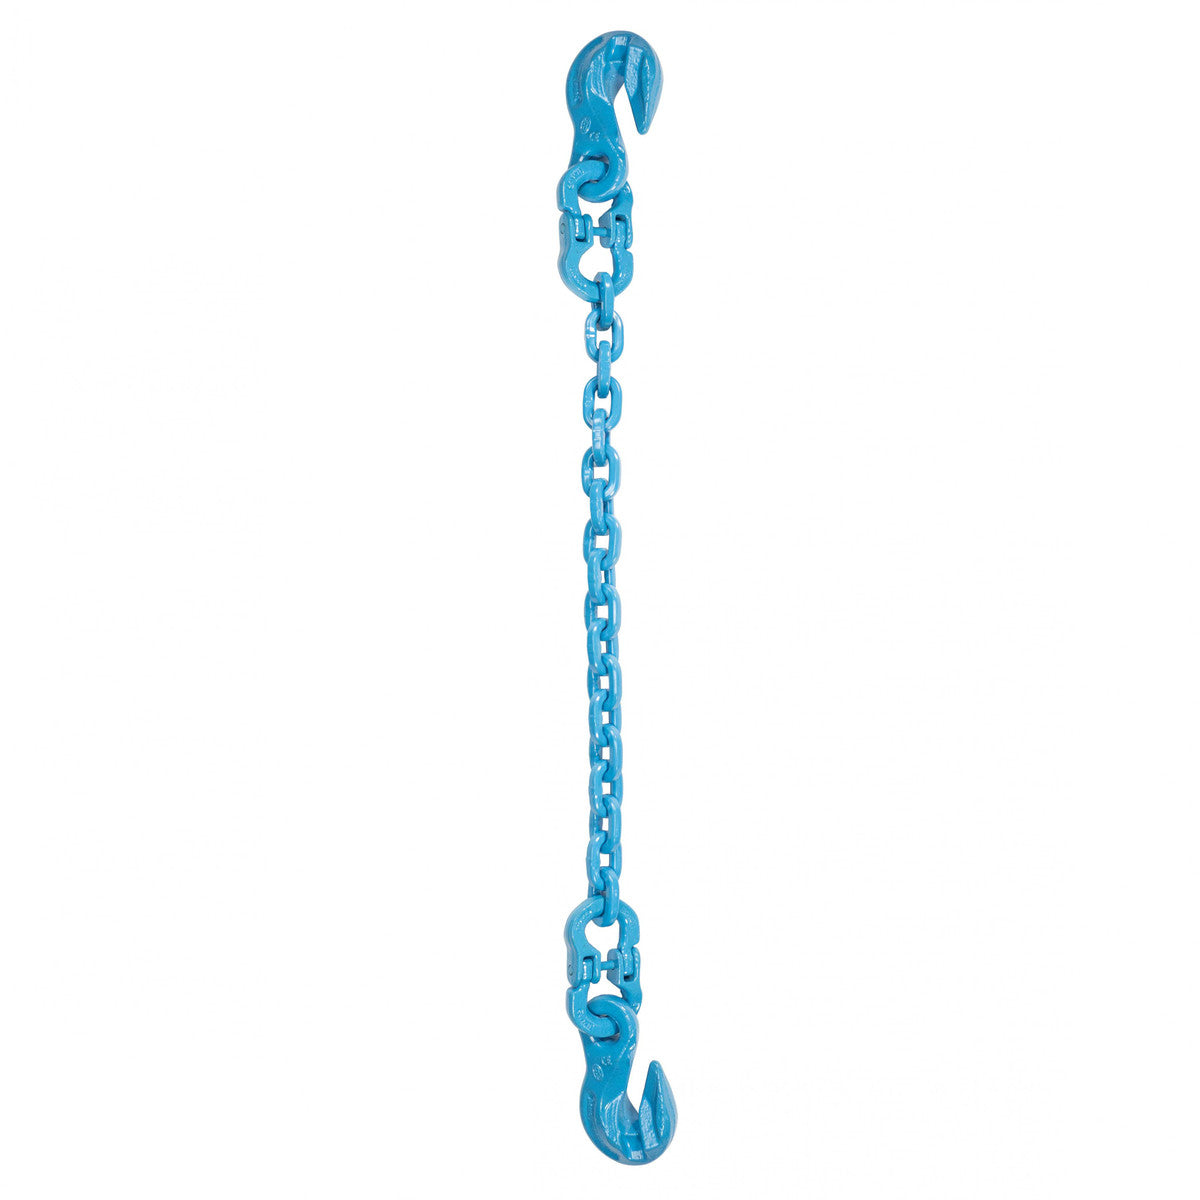 1/2" x 6' - Pewag Single Leg Chain Sling w/ Grab & Grab Hooks - Grade 120